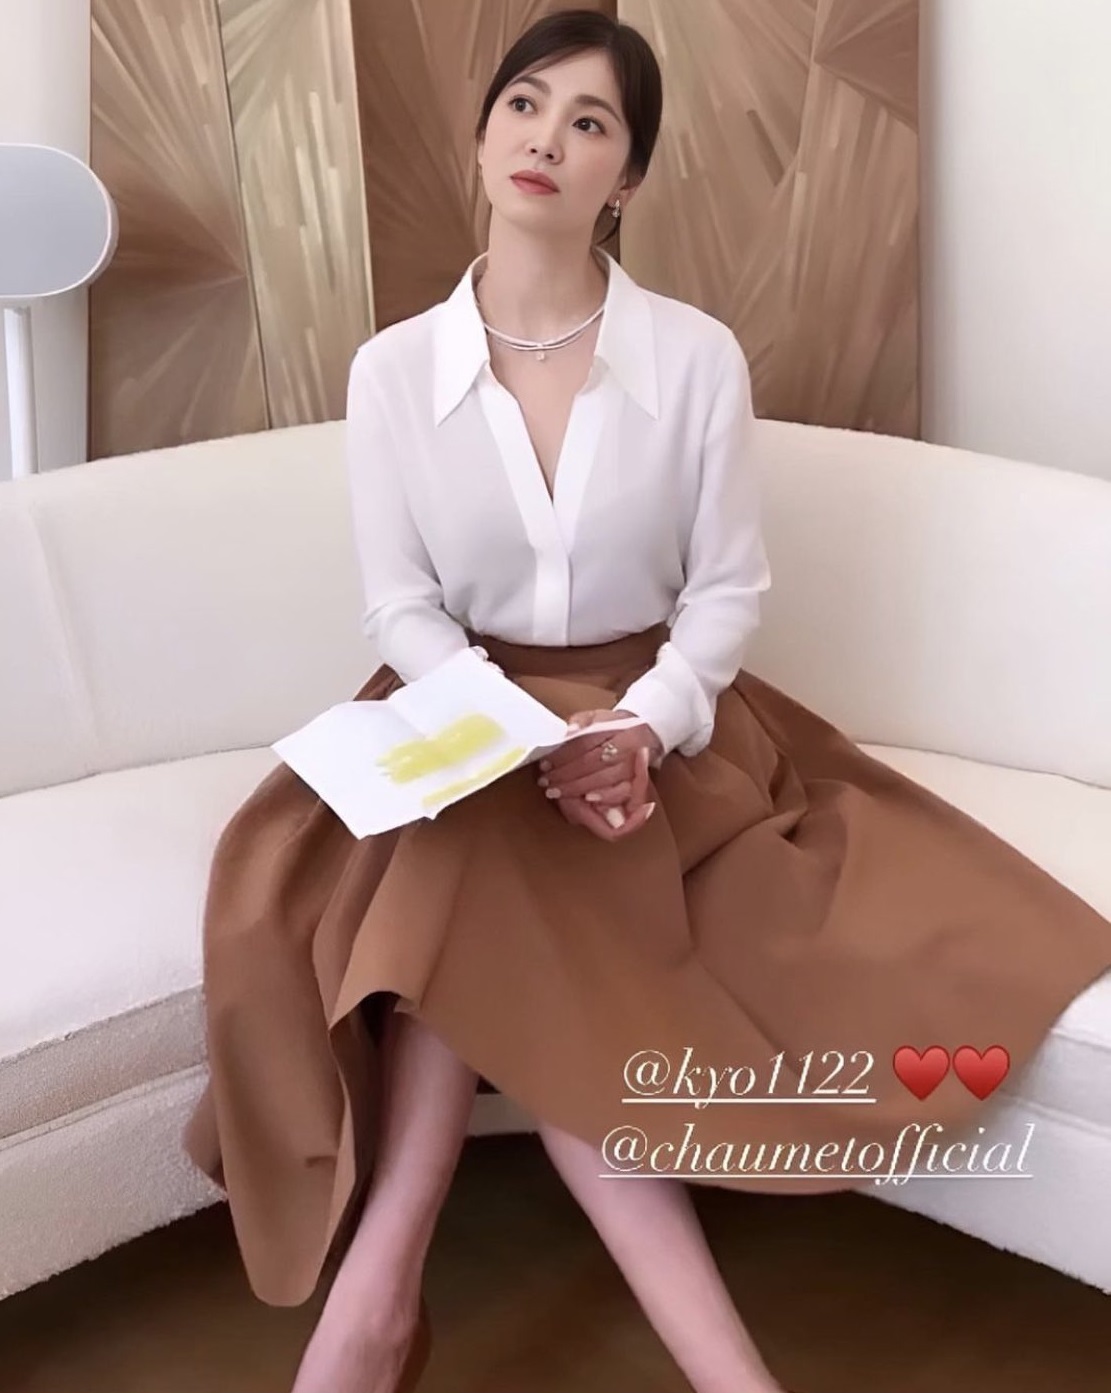 Váy cưới của Song Hye Kyo phiên bản rẻ đang rầm rộ tại các shop thời trang